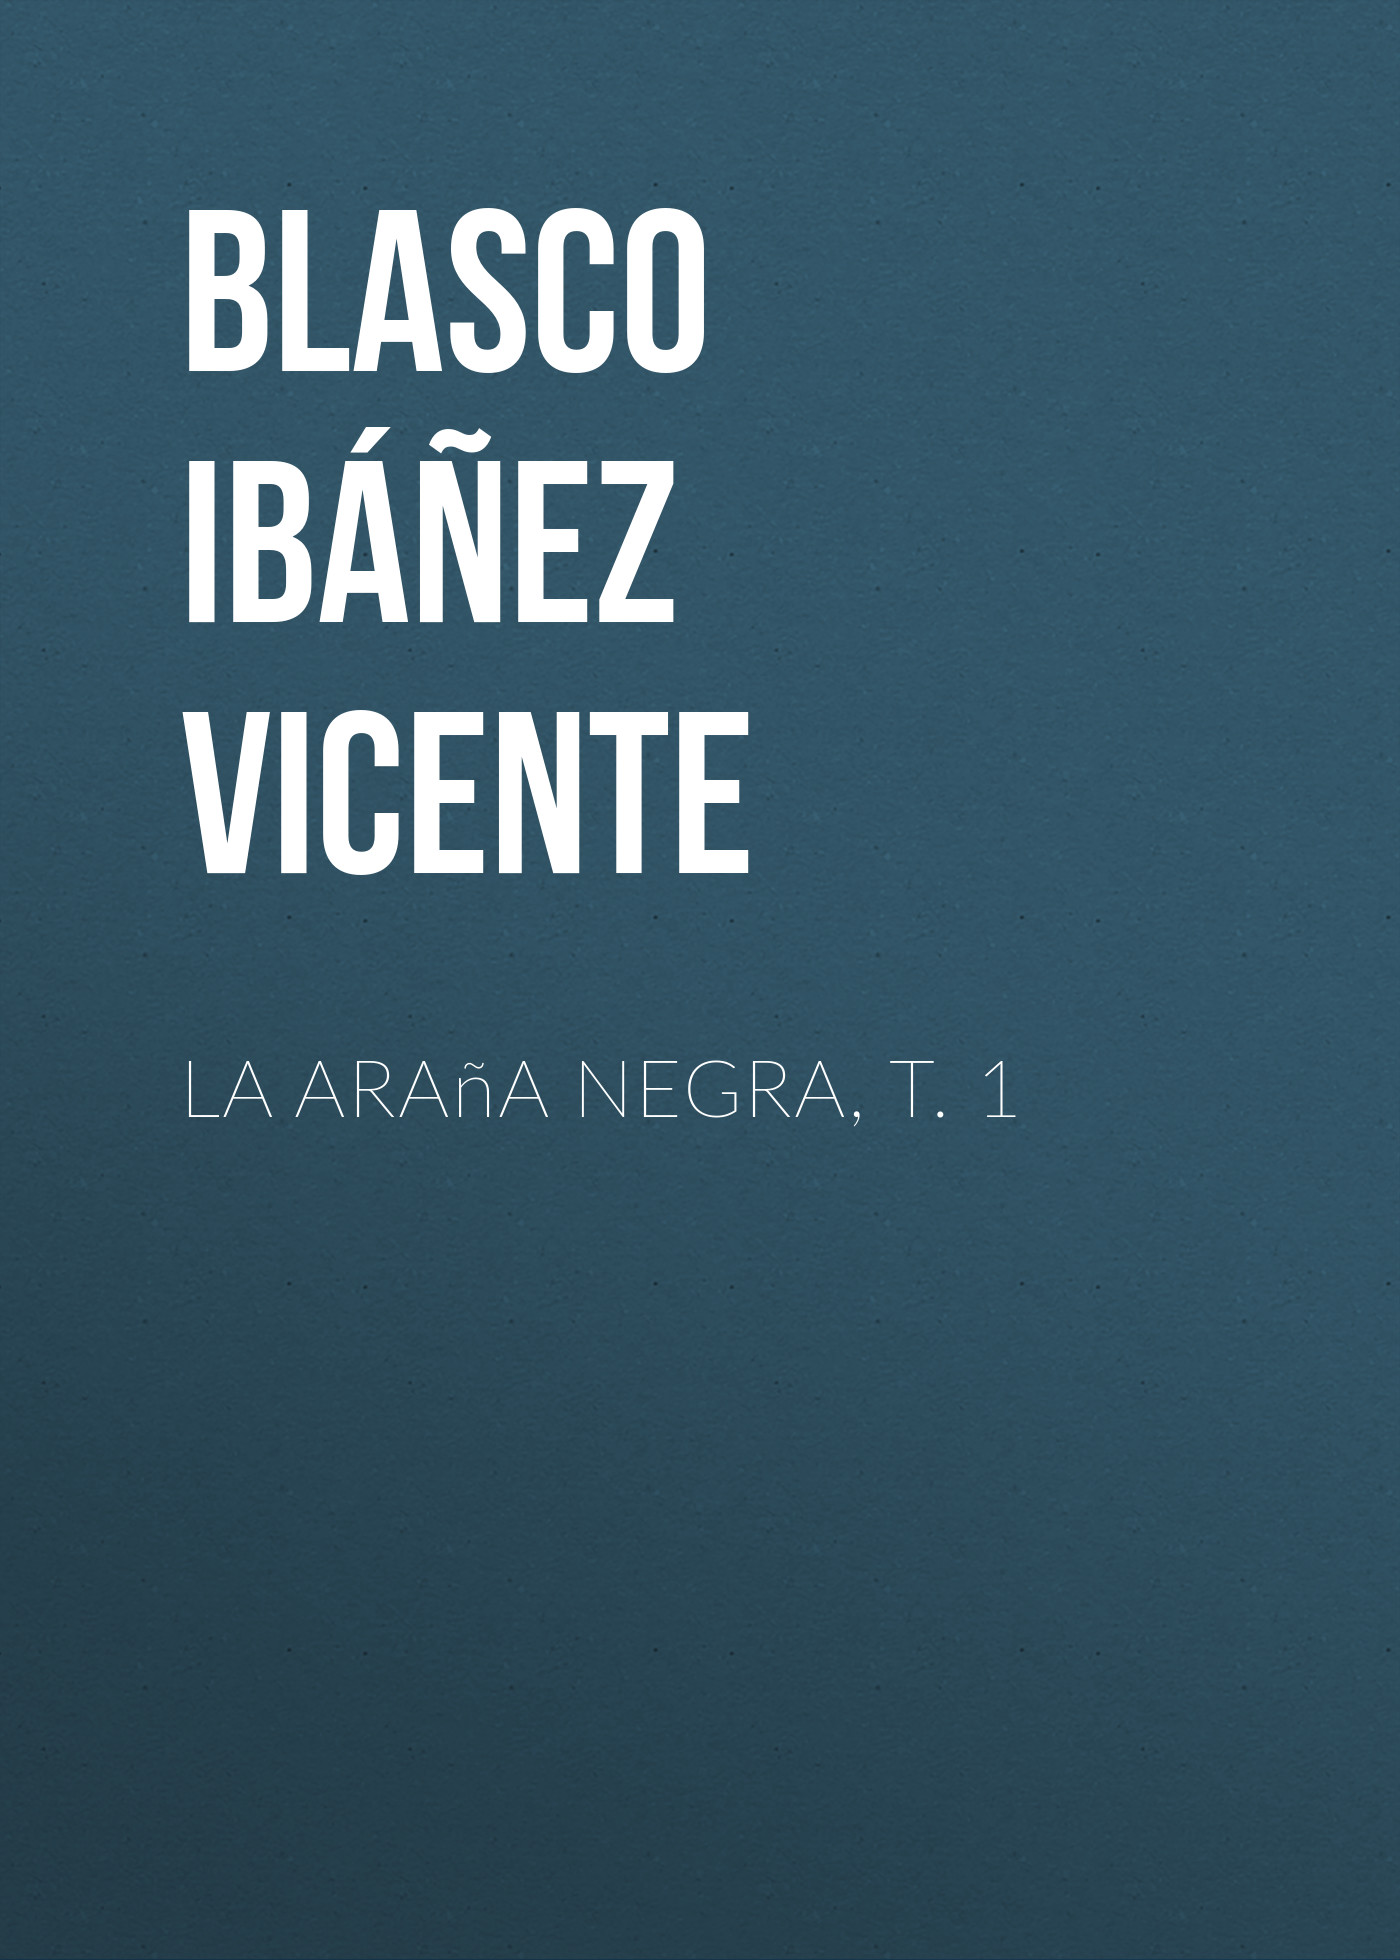 Книга La araña negra, t. 1 из серии , созданная Vicente Blasco Ibáñez, может относится к жанру Зарубежная классика, Зарубежная старинная литература, Иностранные языки. Стоимость электронной книги La araña negra, t. 1 с идентификатором 24178804 составляет 0 руб.